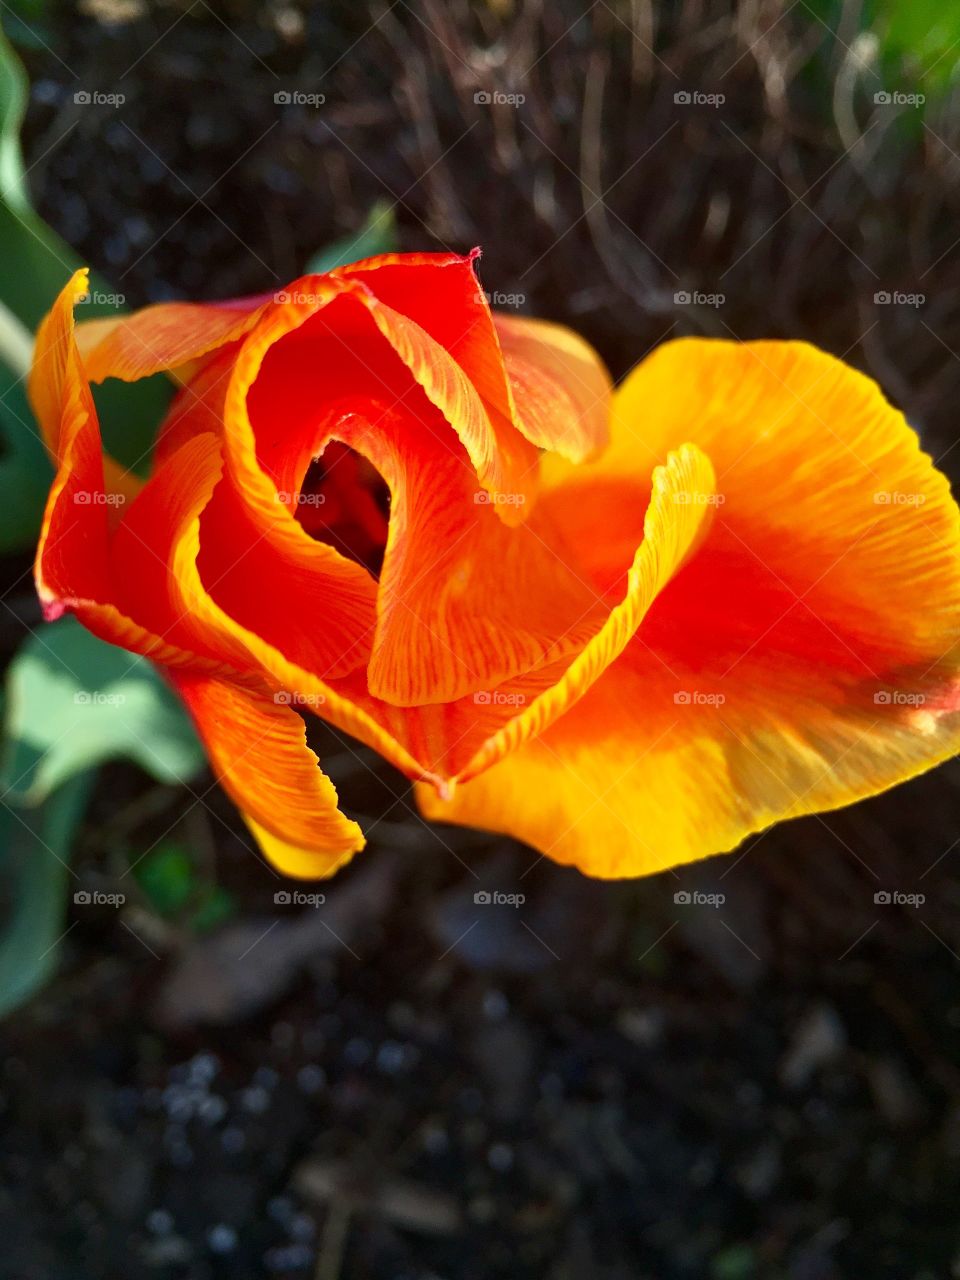 Orange Tulip 